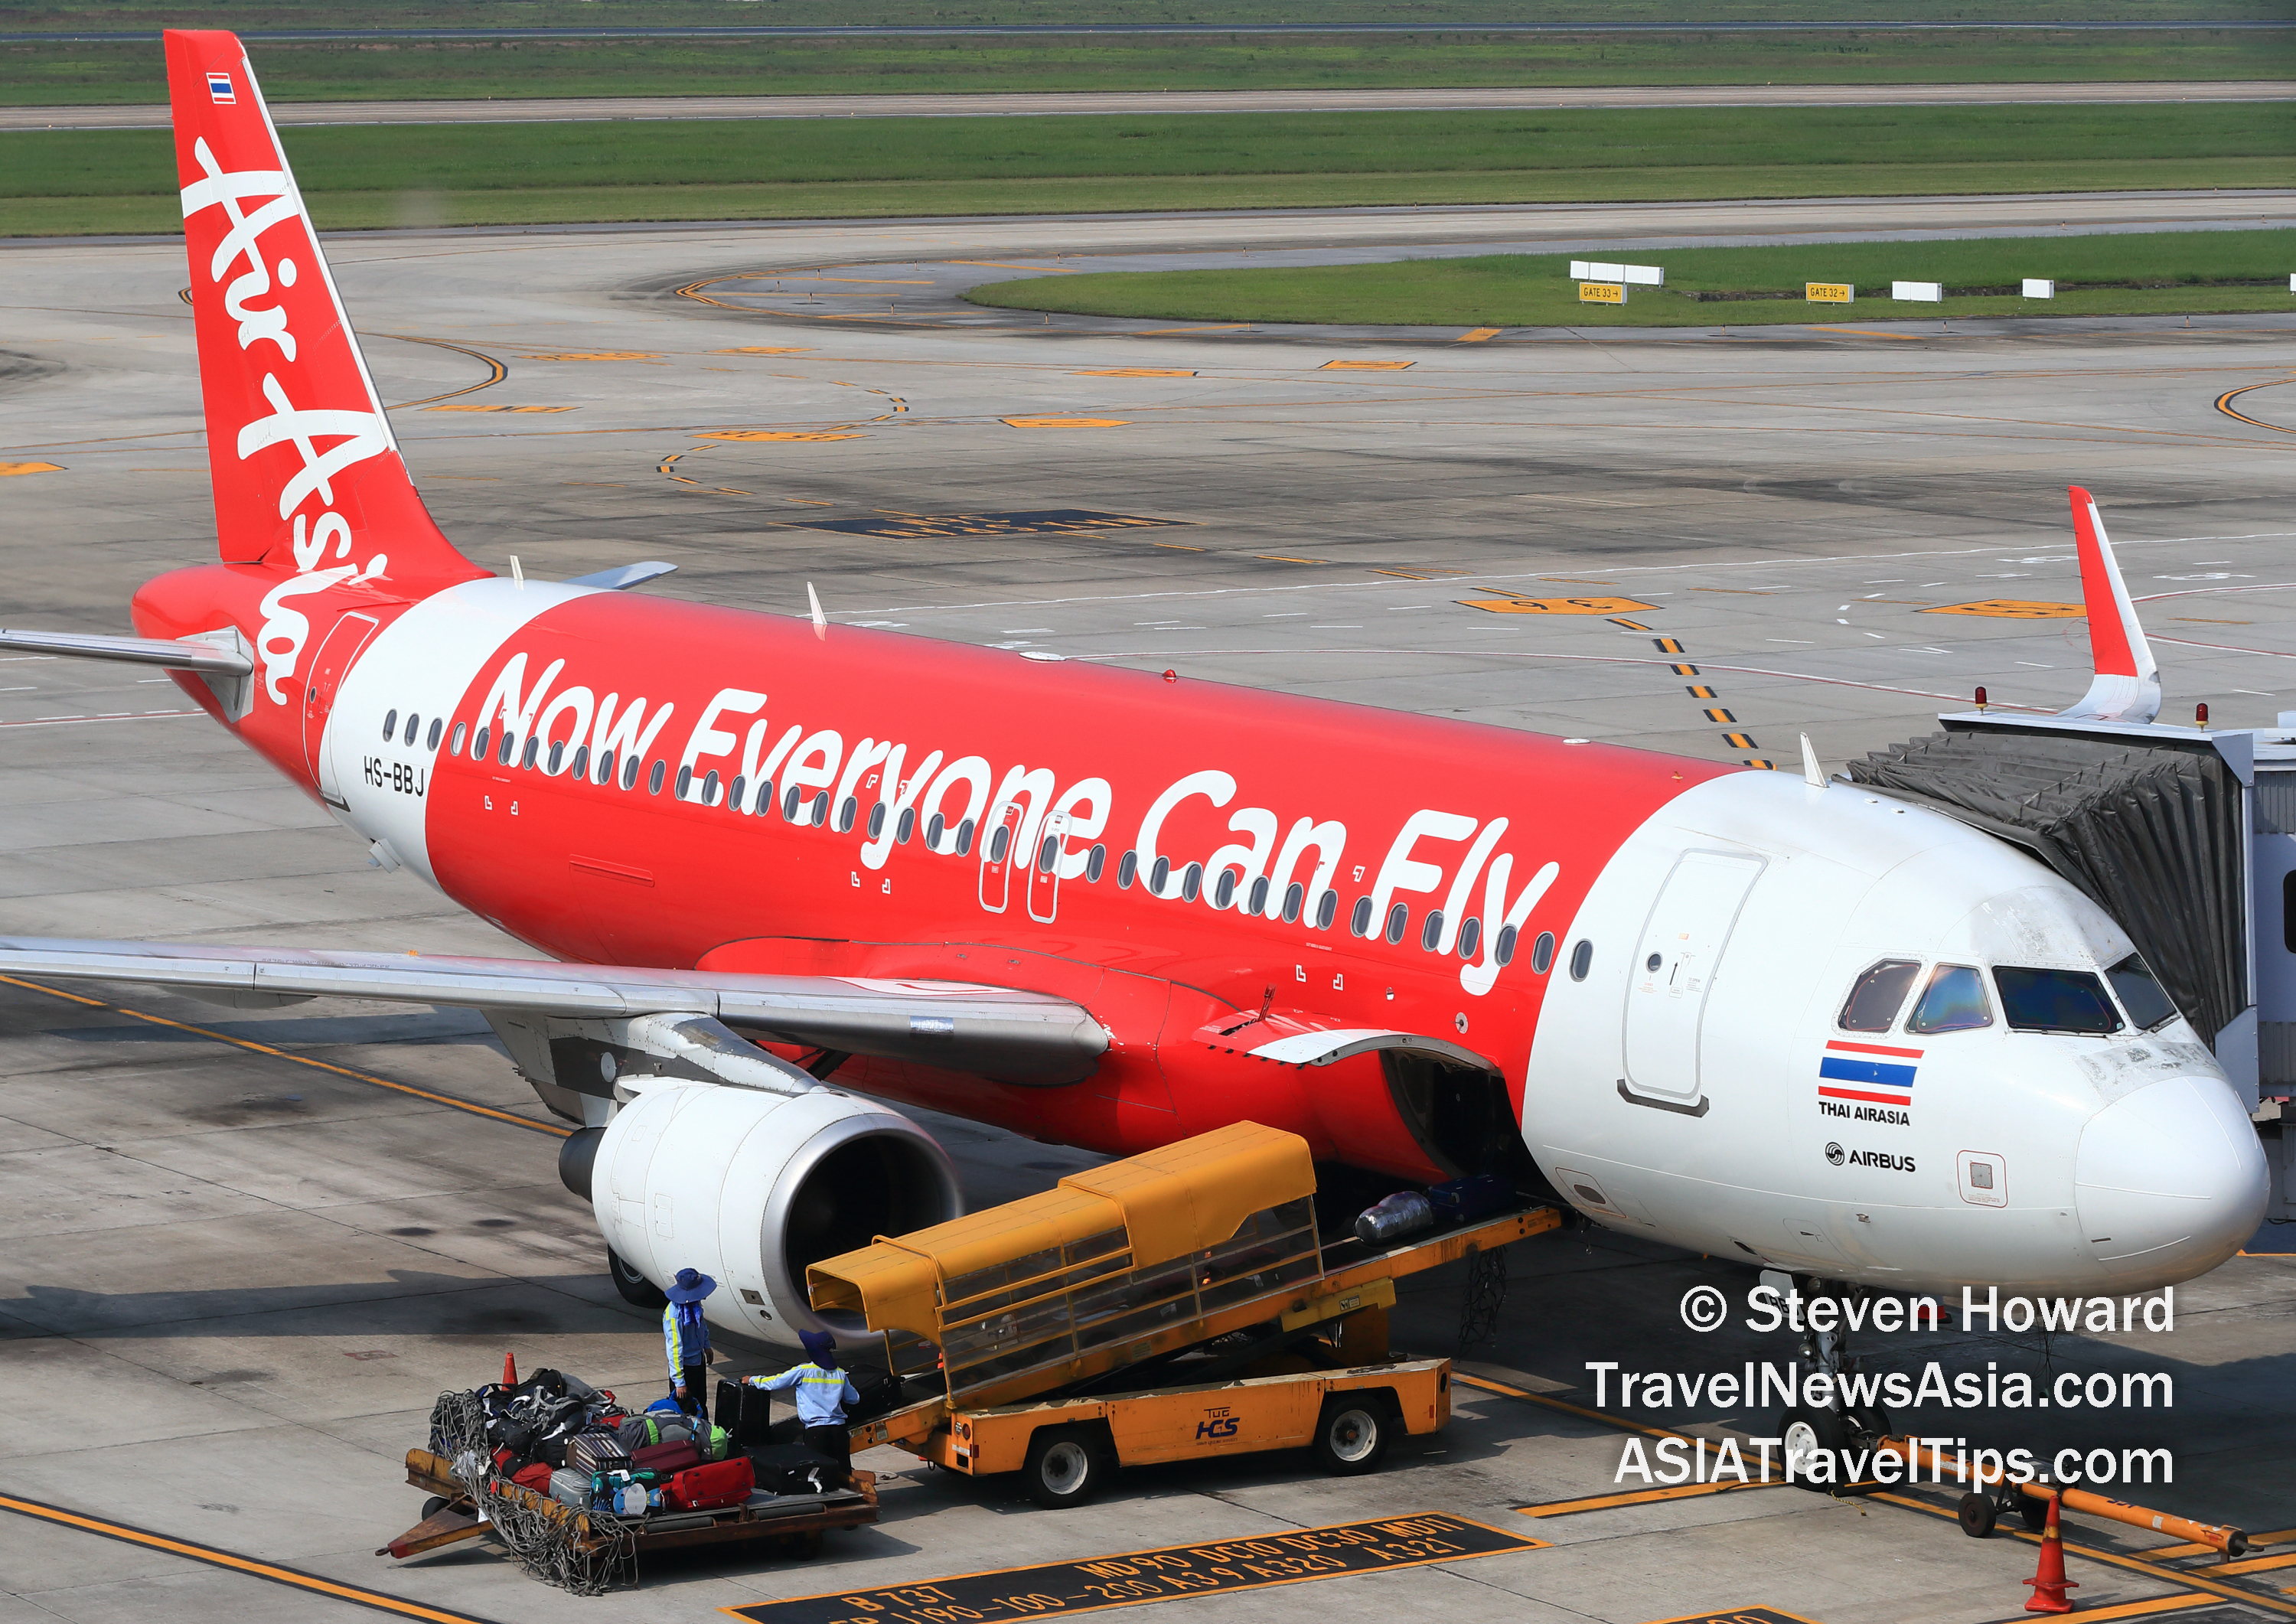 Airasia vtl flight to singapore